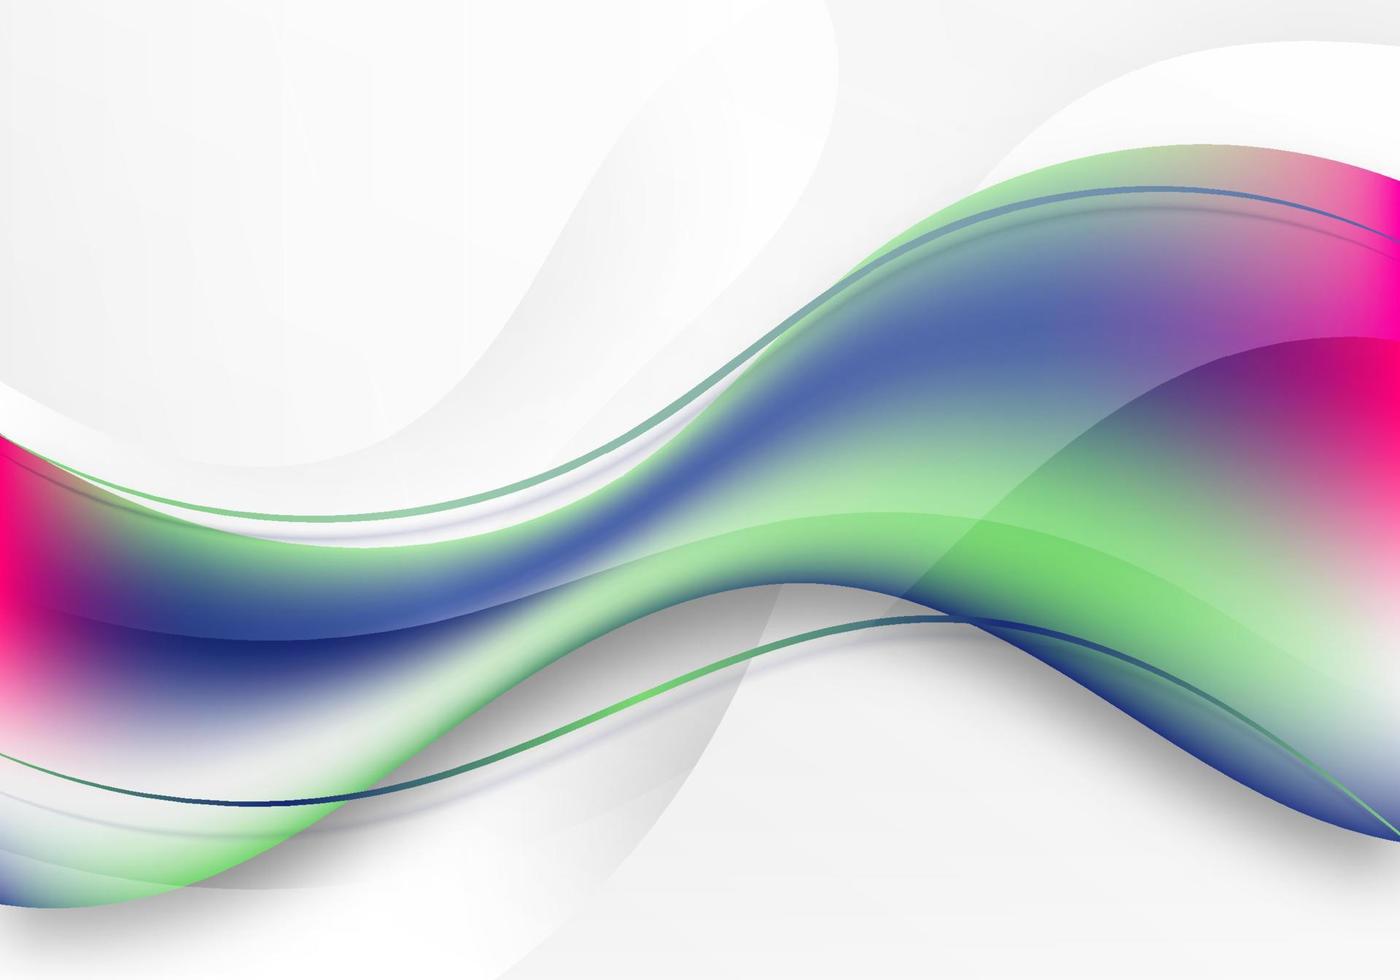 forma dinamica fluida colorata astratta 3d su sfondo bianco vettore